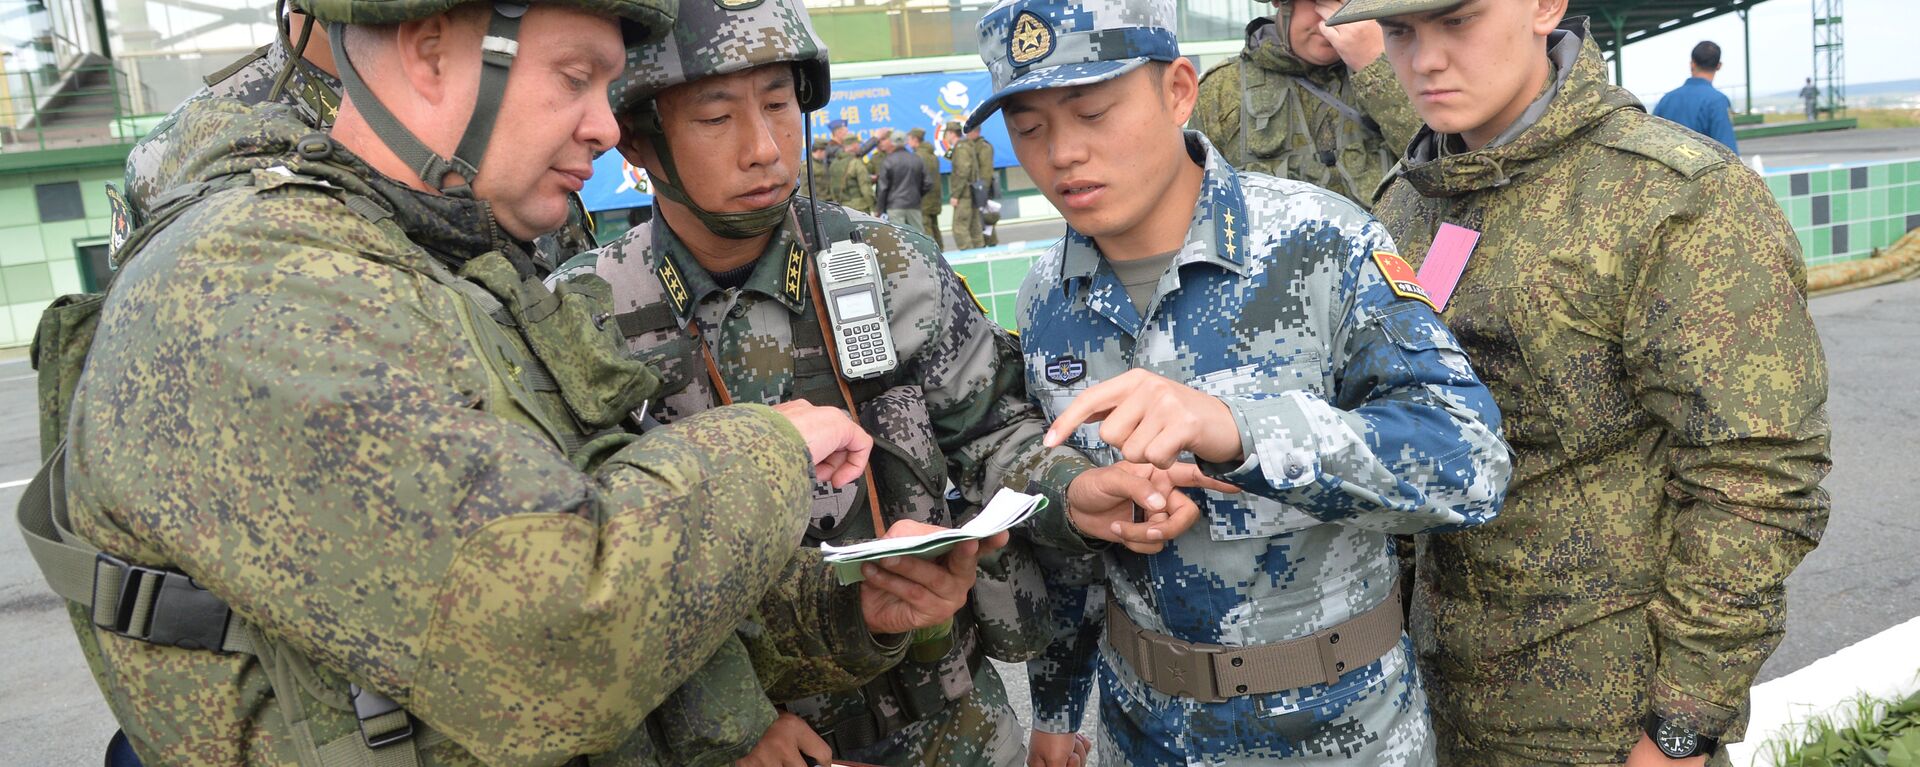 Các quân nhân của CHND Trung Hoa và Nga tham gia cuộc tập trận chỉ huy và tham mưu quân sự chống khủng bố của lực lượng vũ trang các nước thành viên SCO Sứ mệnh hòa bình - 2018 tại bãi tập ở Chebarkul - Sputnik Việt Nam, 1920, 15.05.2021